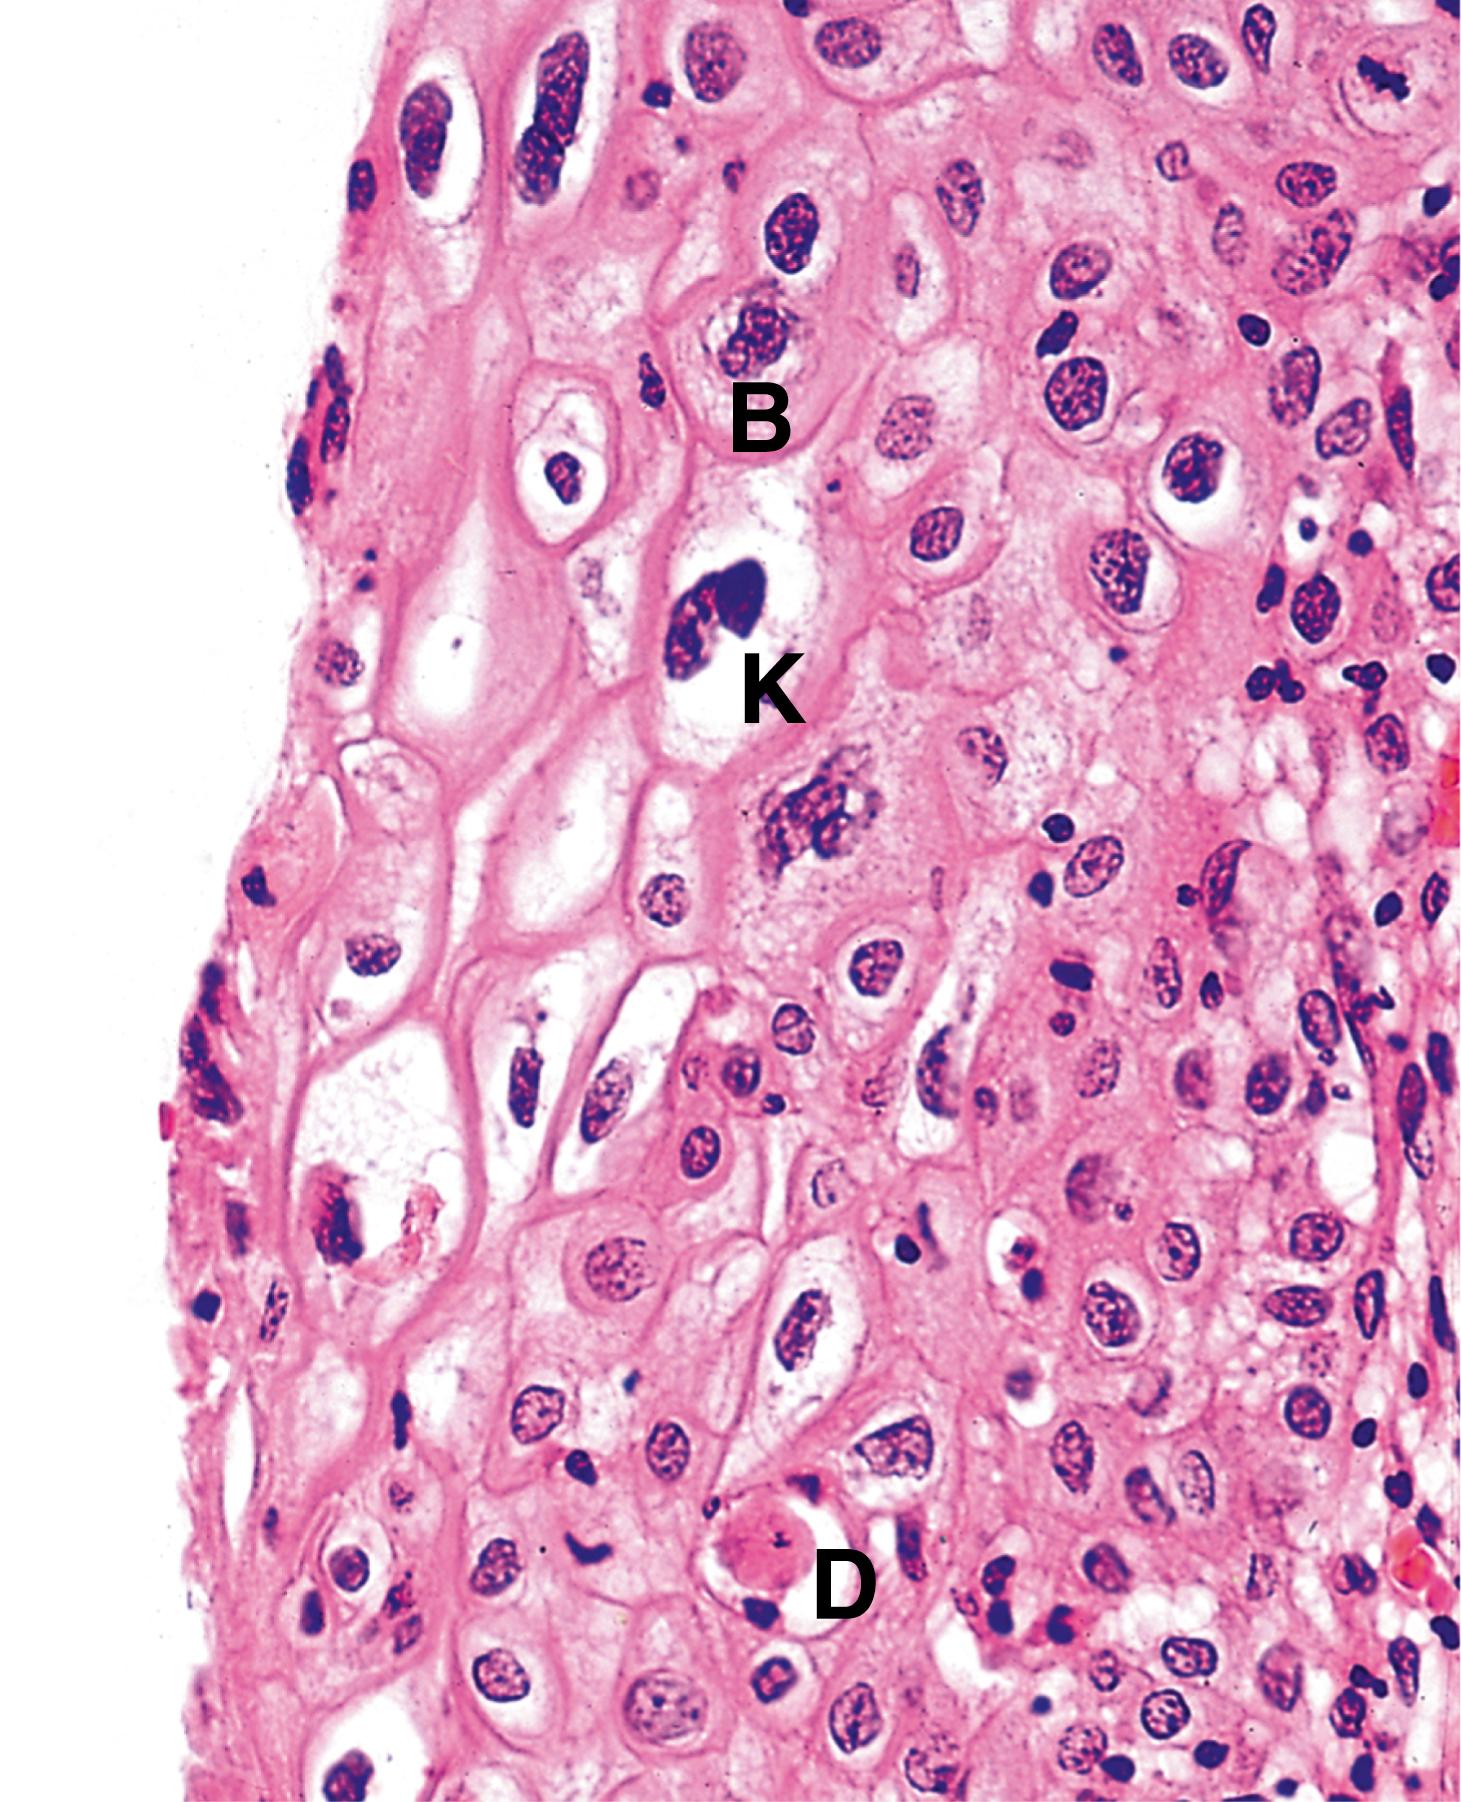 Fig. 5.14, Human papillomavirus (HP).